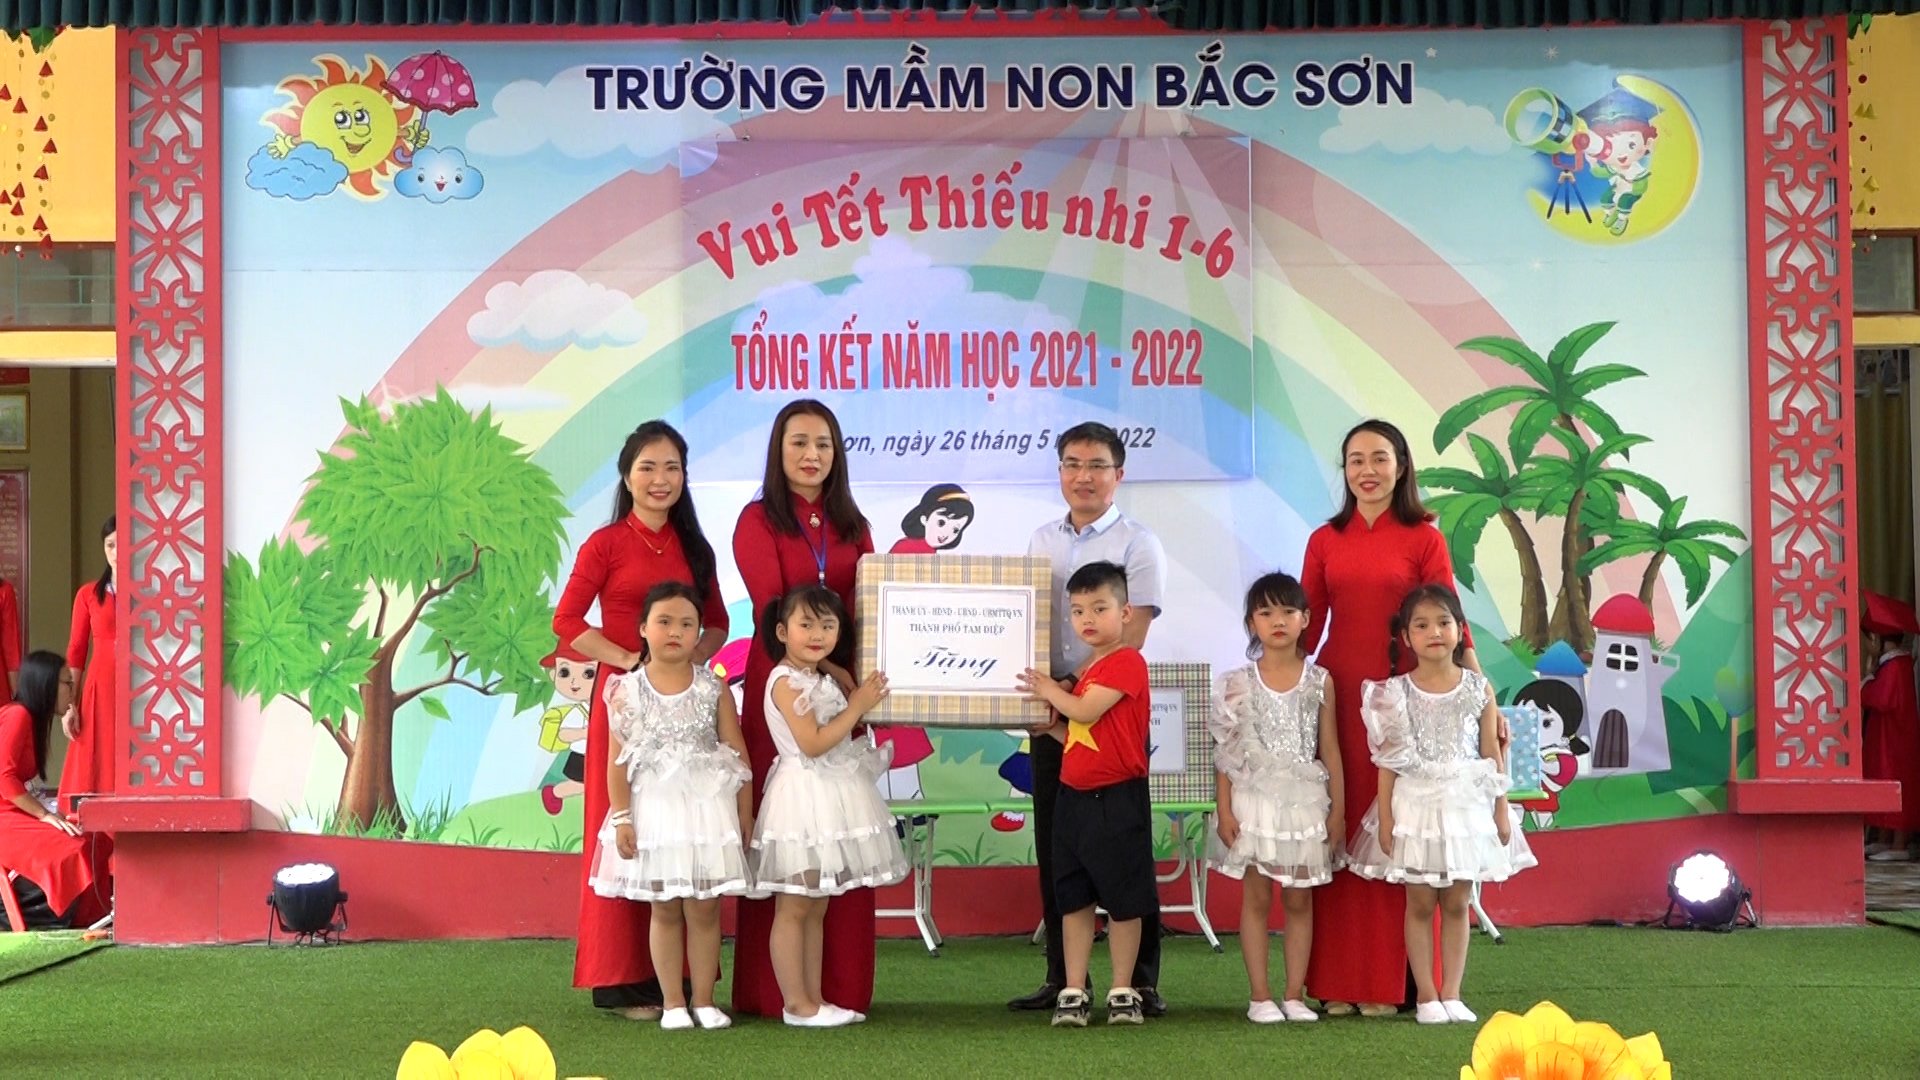 Đồng chí Hoàng Mạnh Hùng, Phó bí thư Thành ủy, Chủ tịch UBND thành phố tặng quà chúc mừng các cháu thiếu nhi tại trường Mầm non Bắc Sơn nhân dịp Quốc tế thiếu nhi 1-6